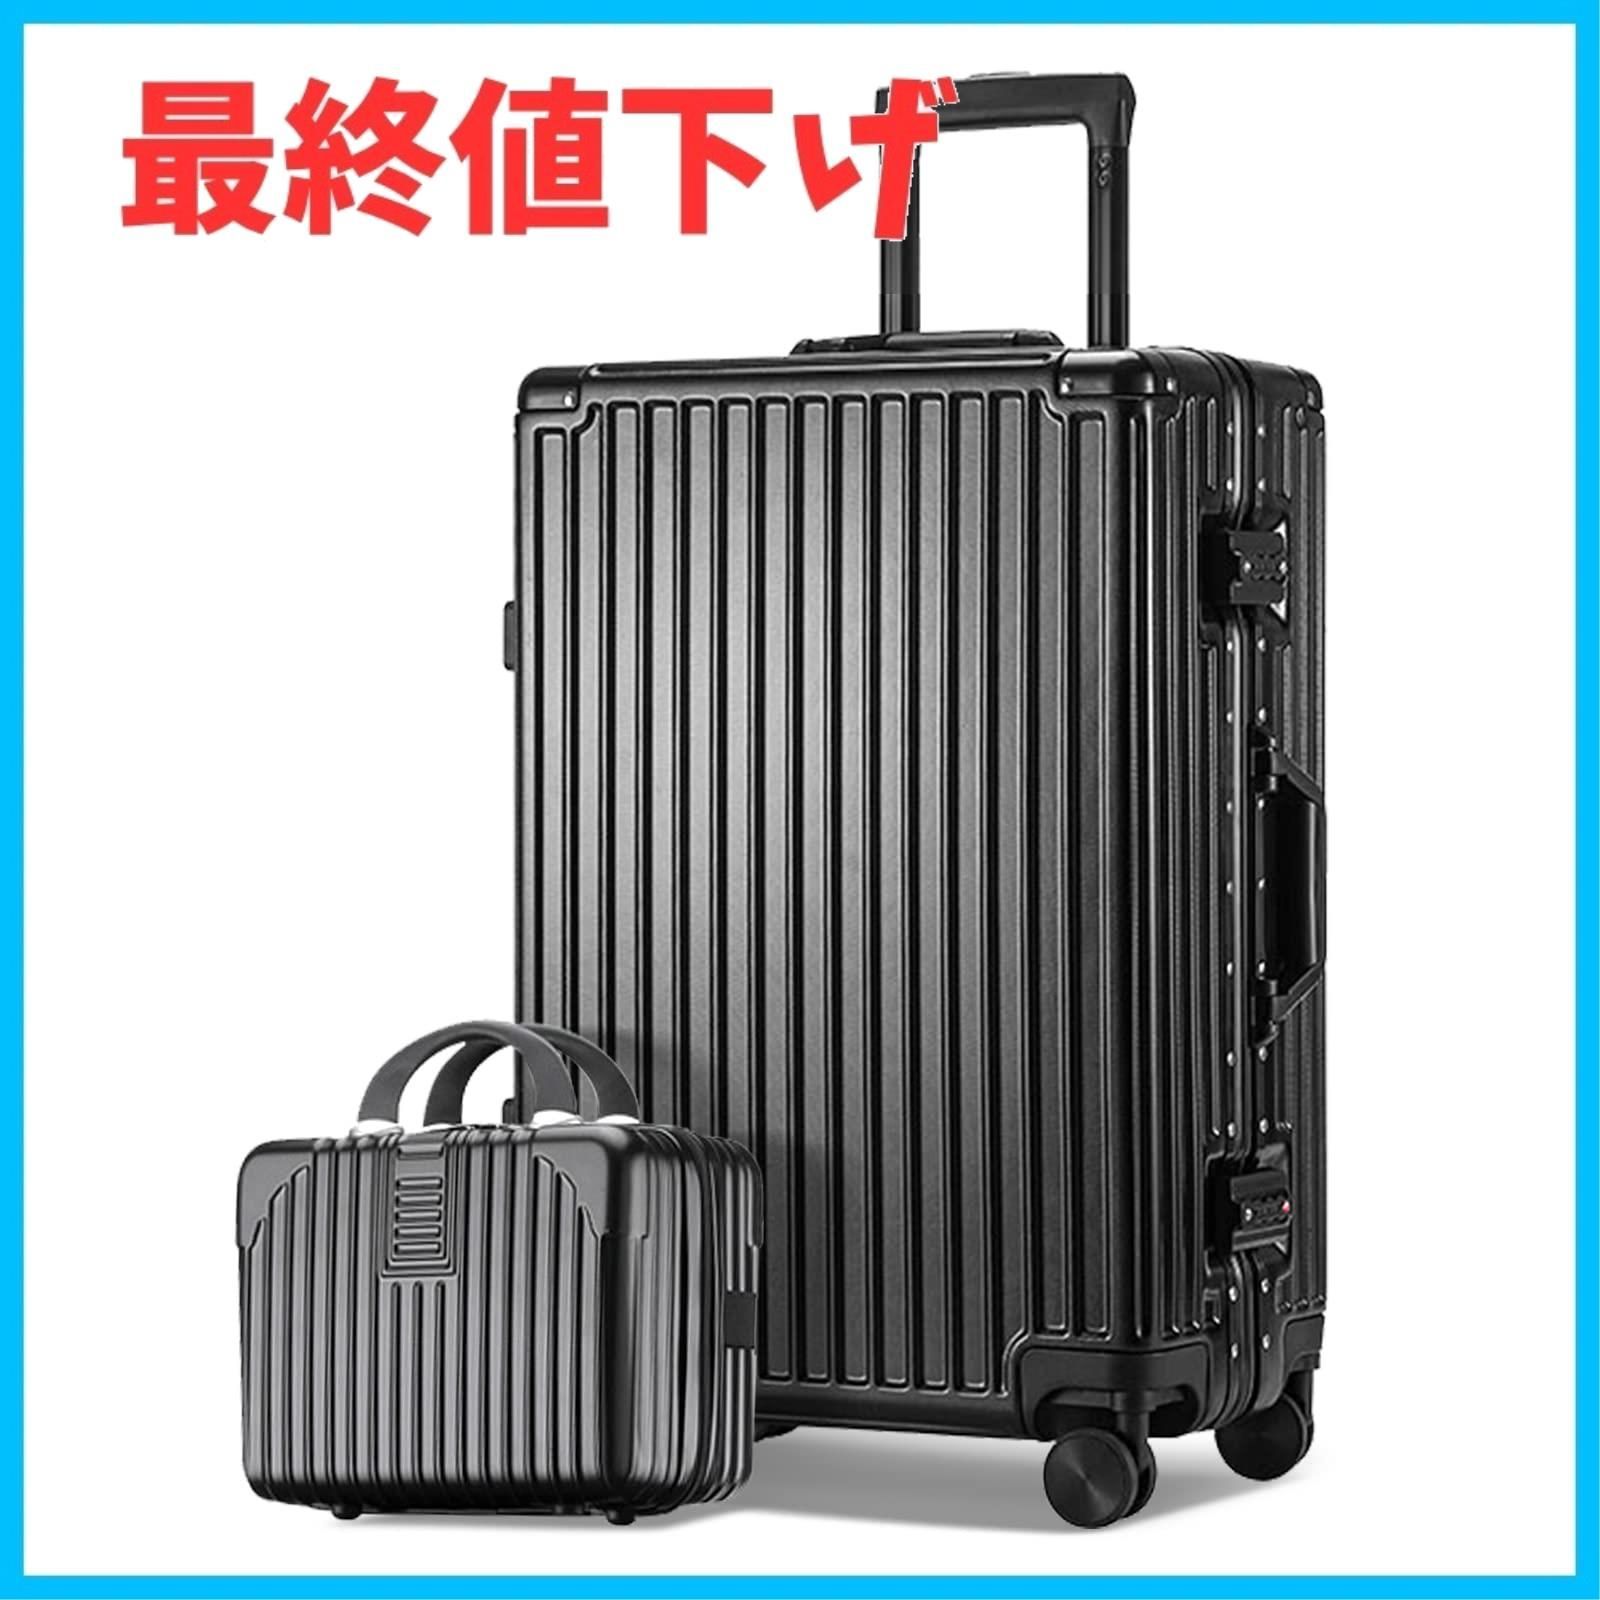 特価商品】フレームタイプ スーツケース キャリーバッグ ケース+